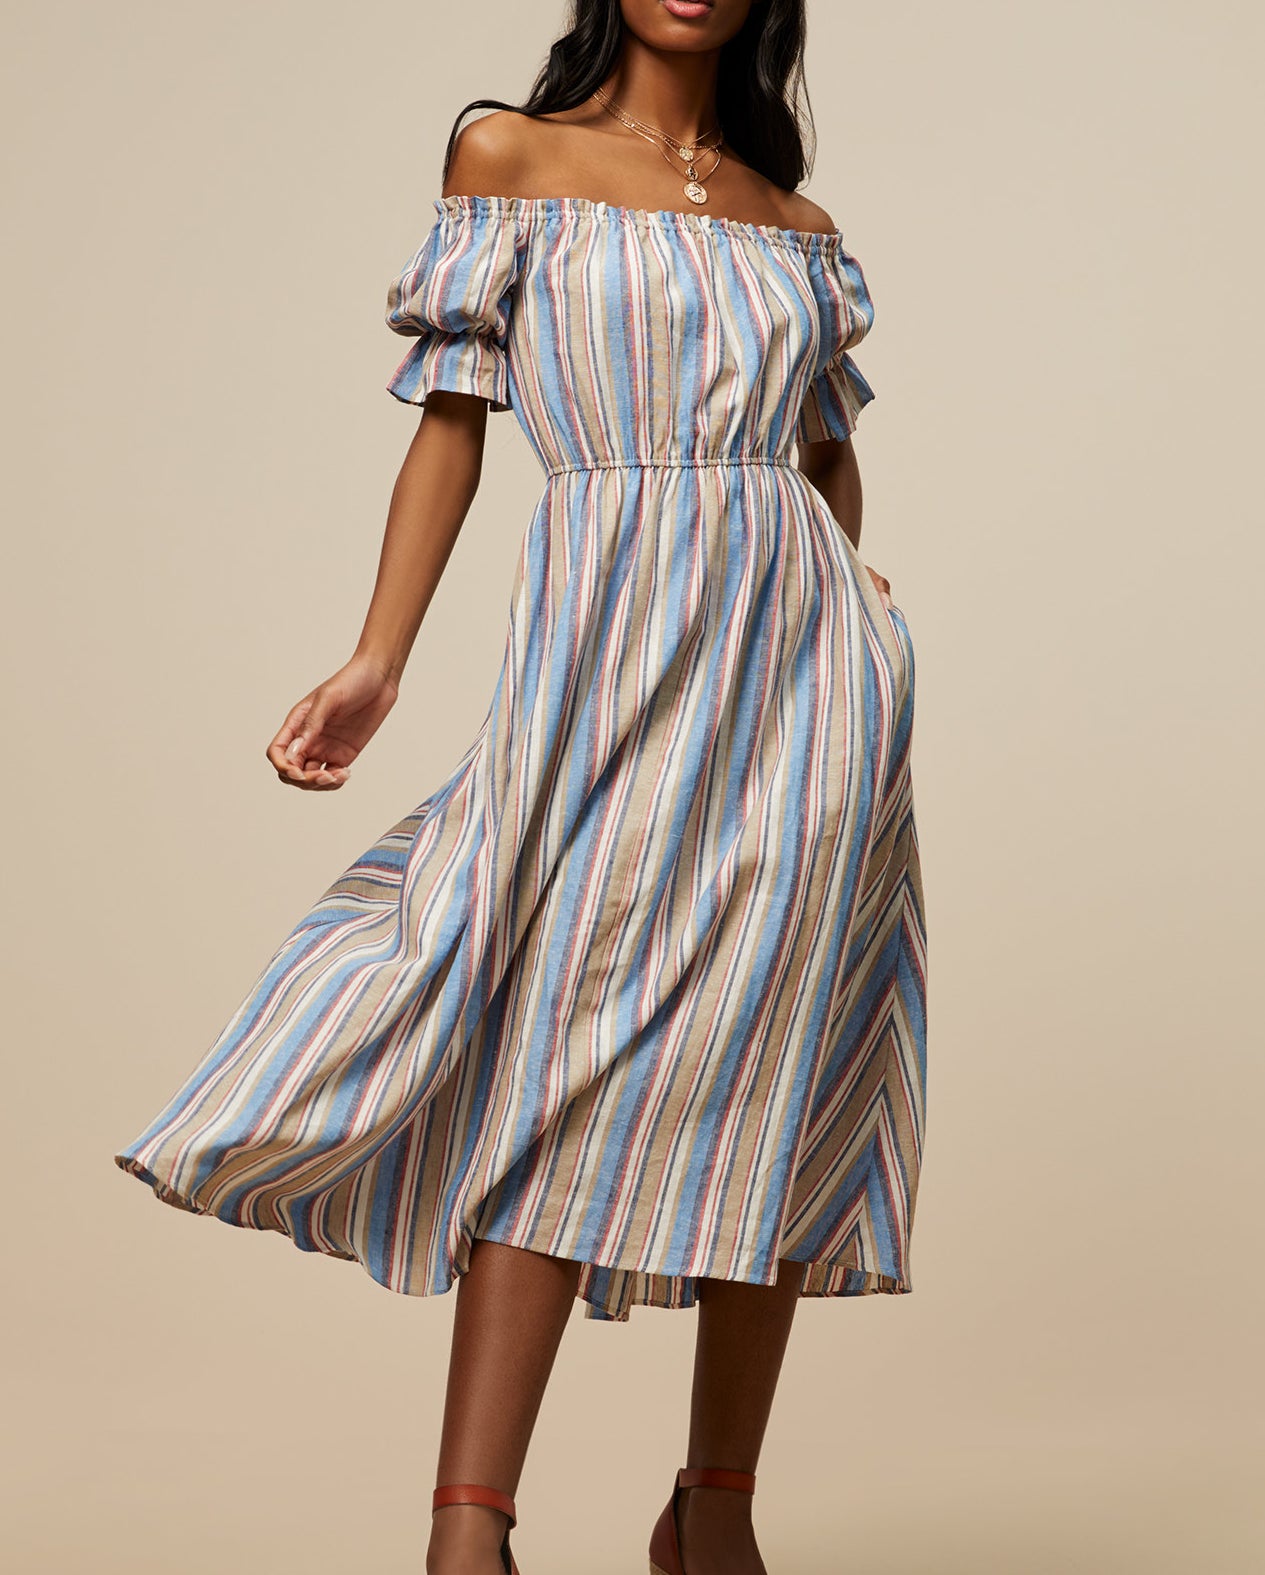 Model wearing the striped dress 